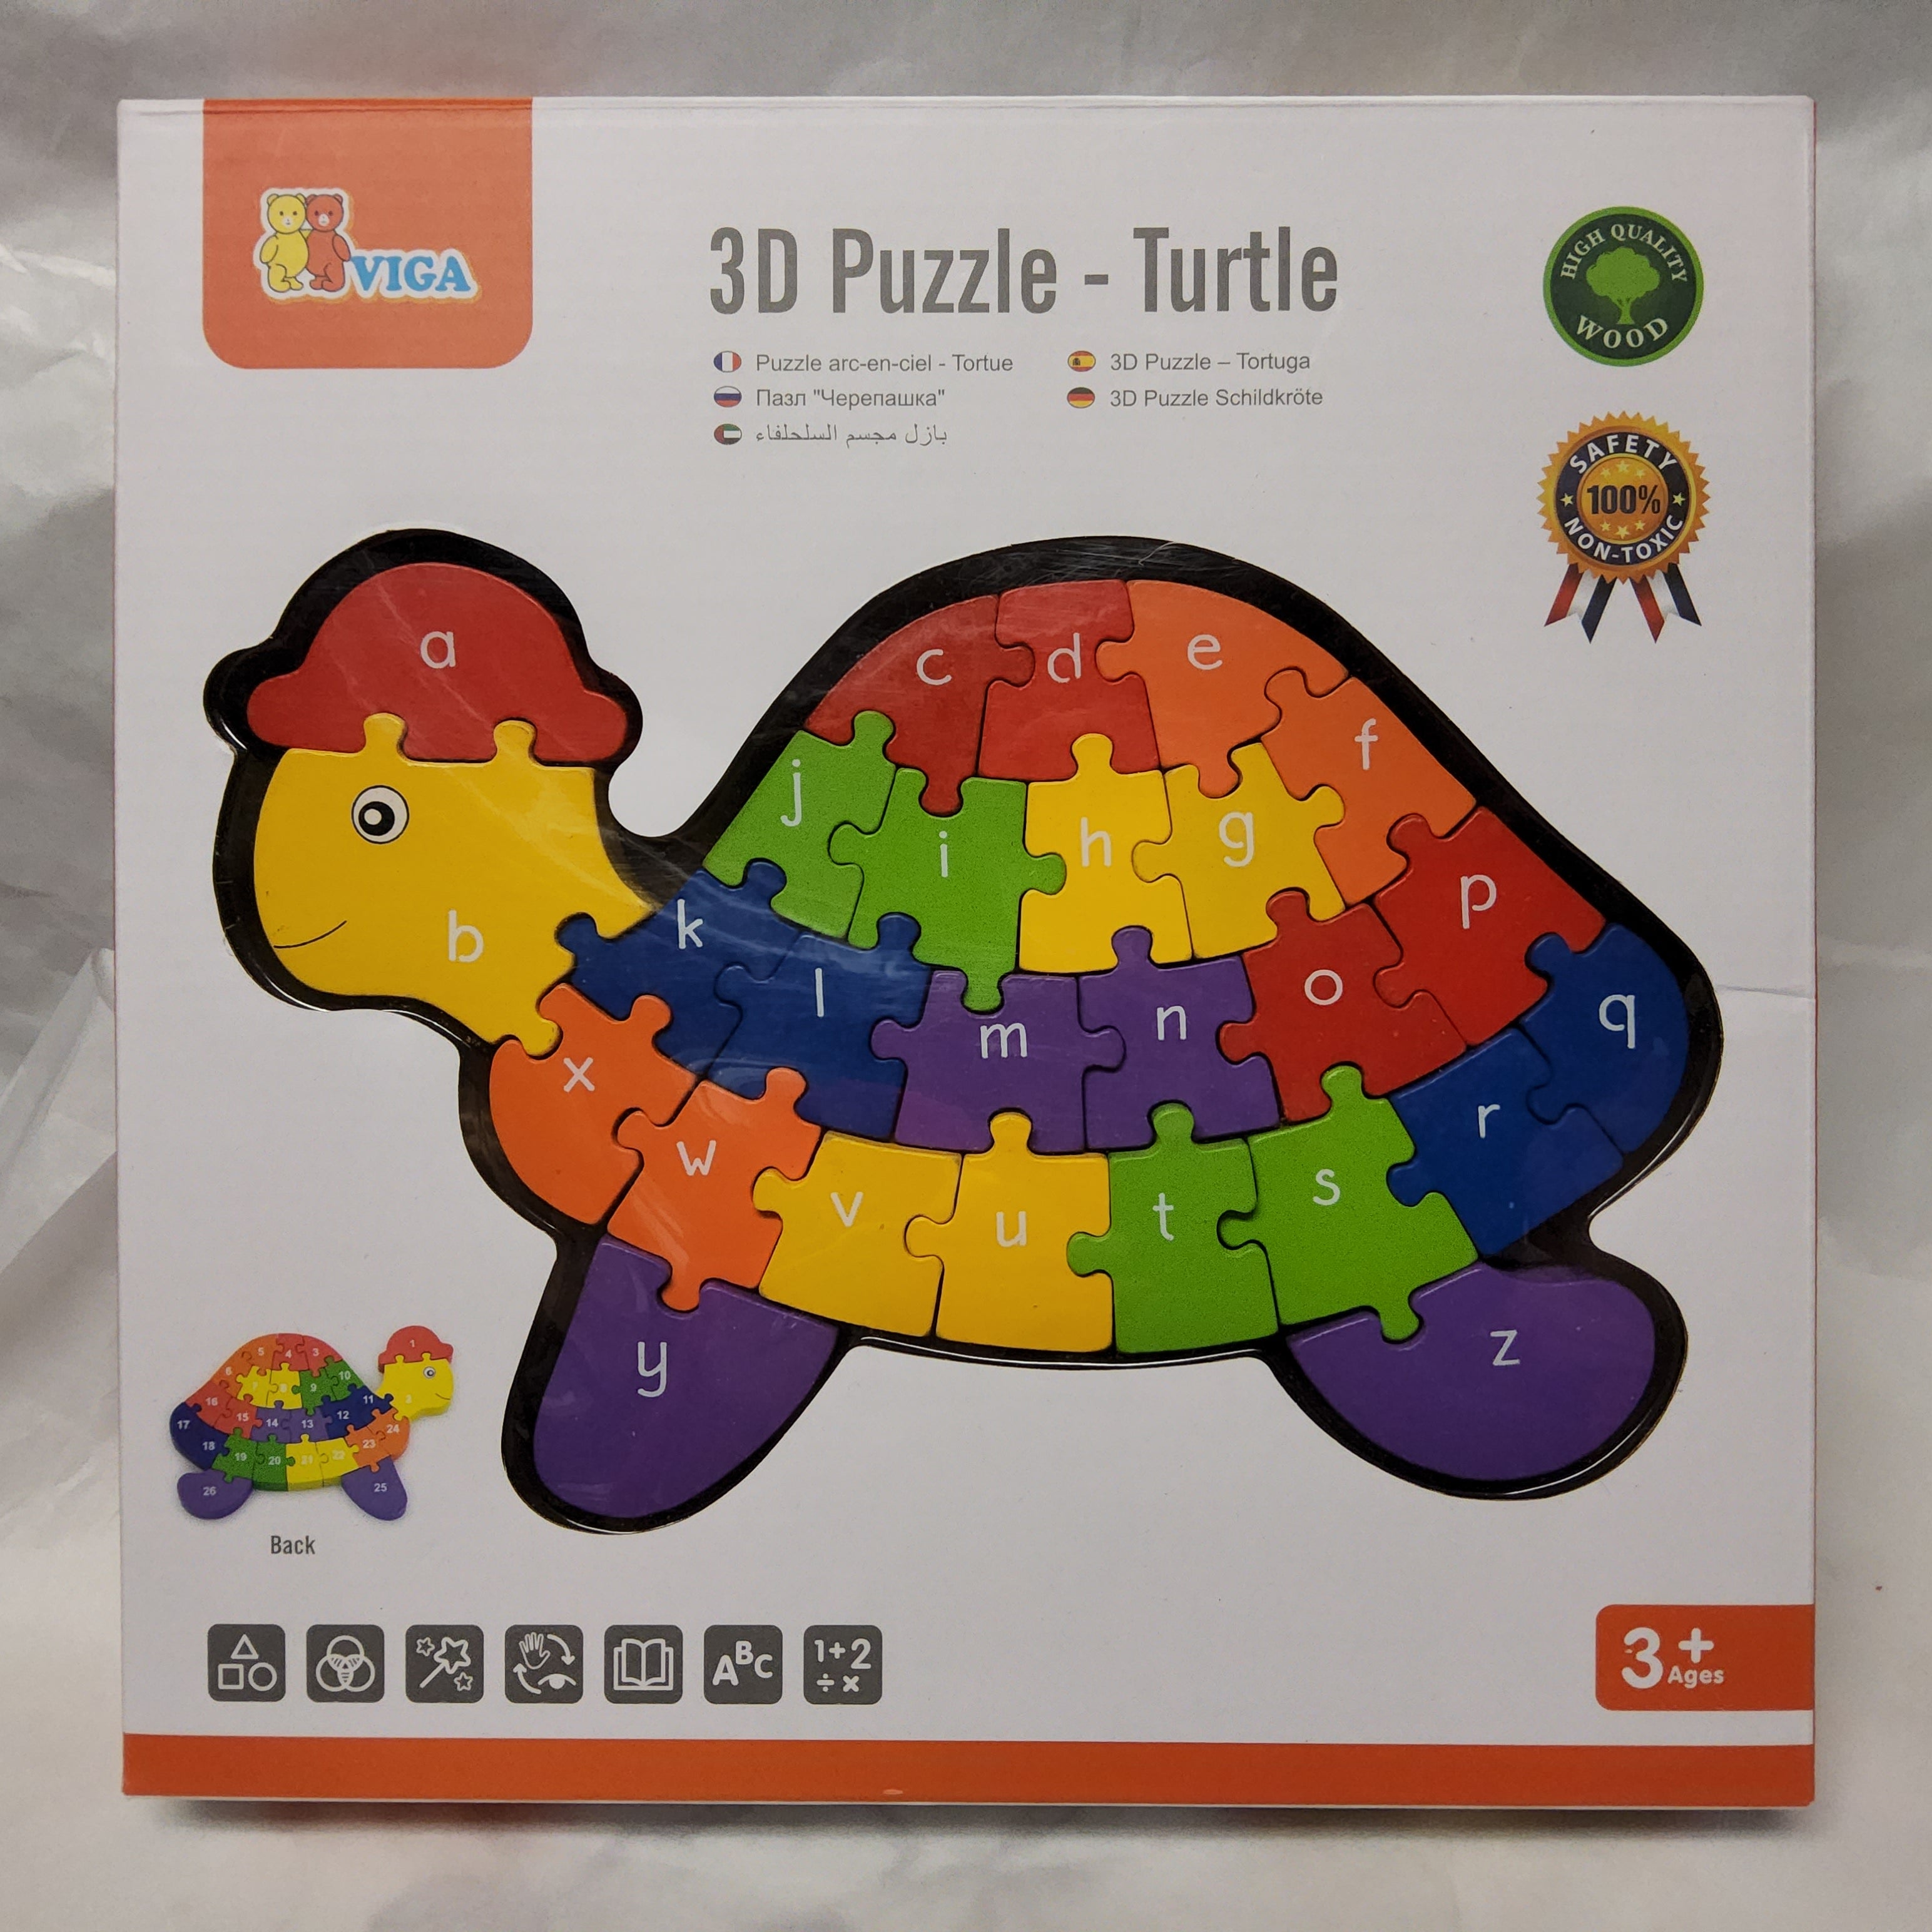 Viga - 3D Puzzle - Turtle 552503